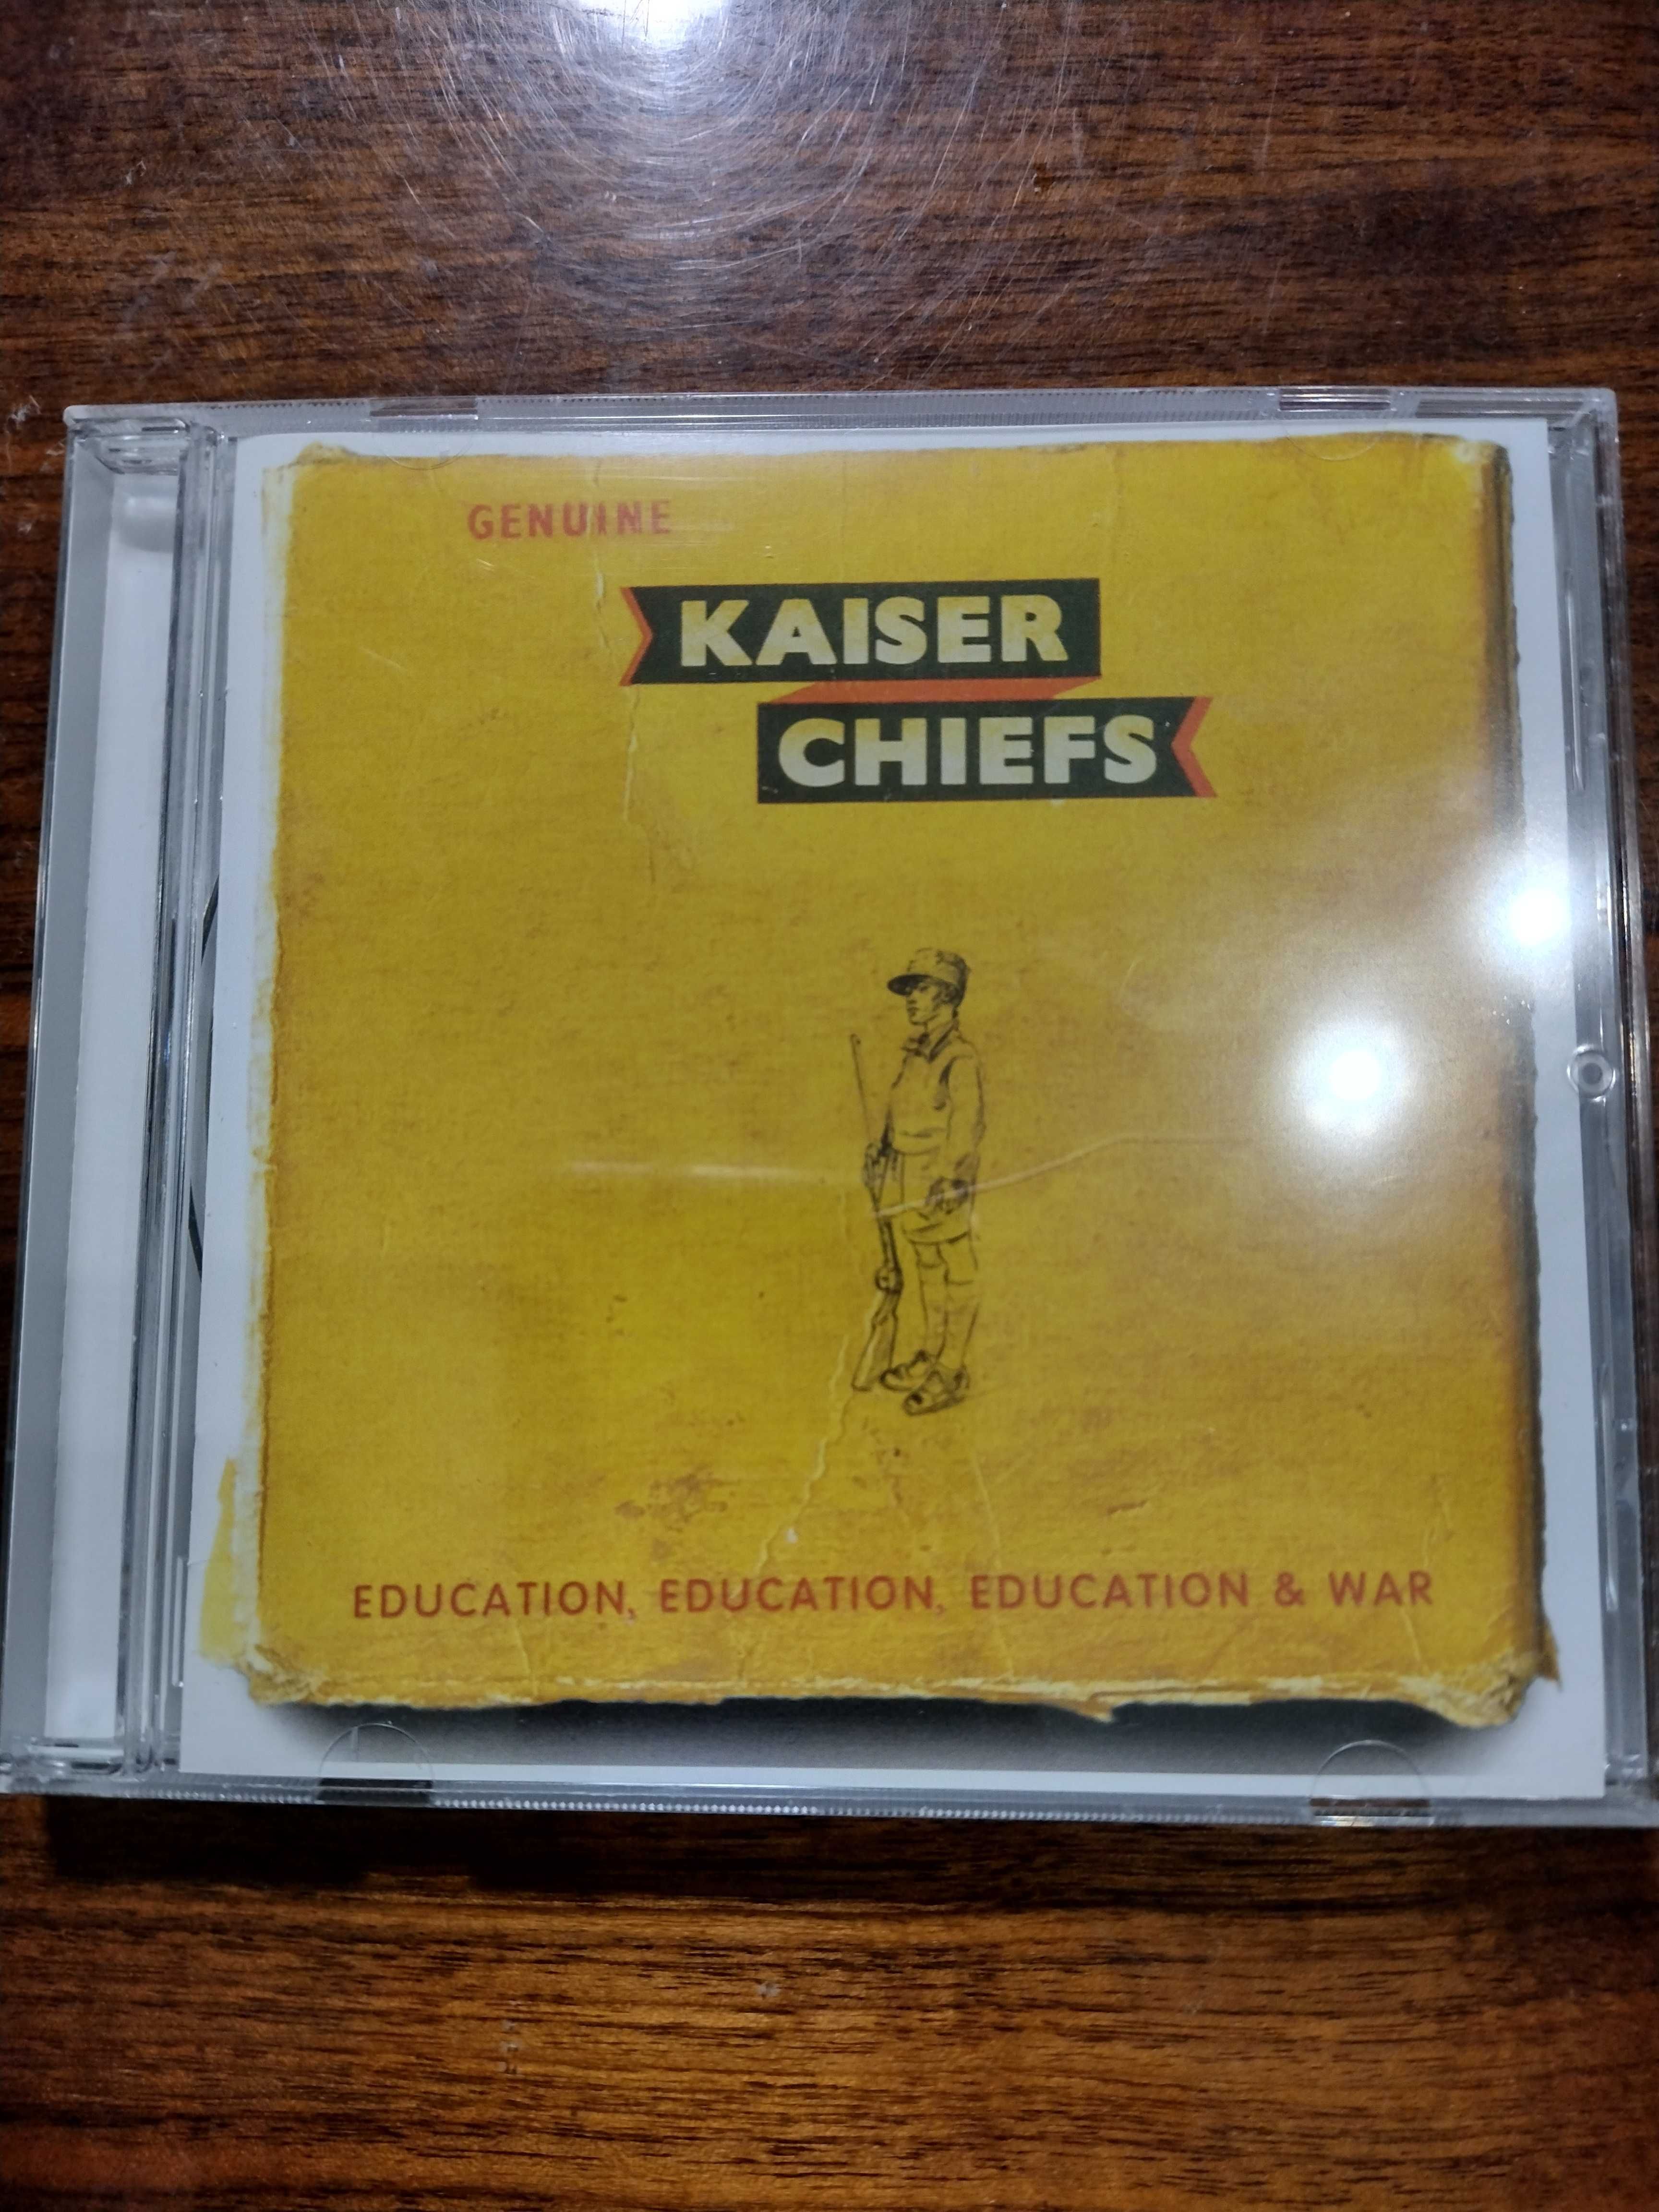 Płyta CD Kaiser Chiefs, "Education, education, education & war"